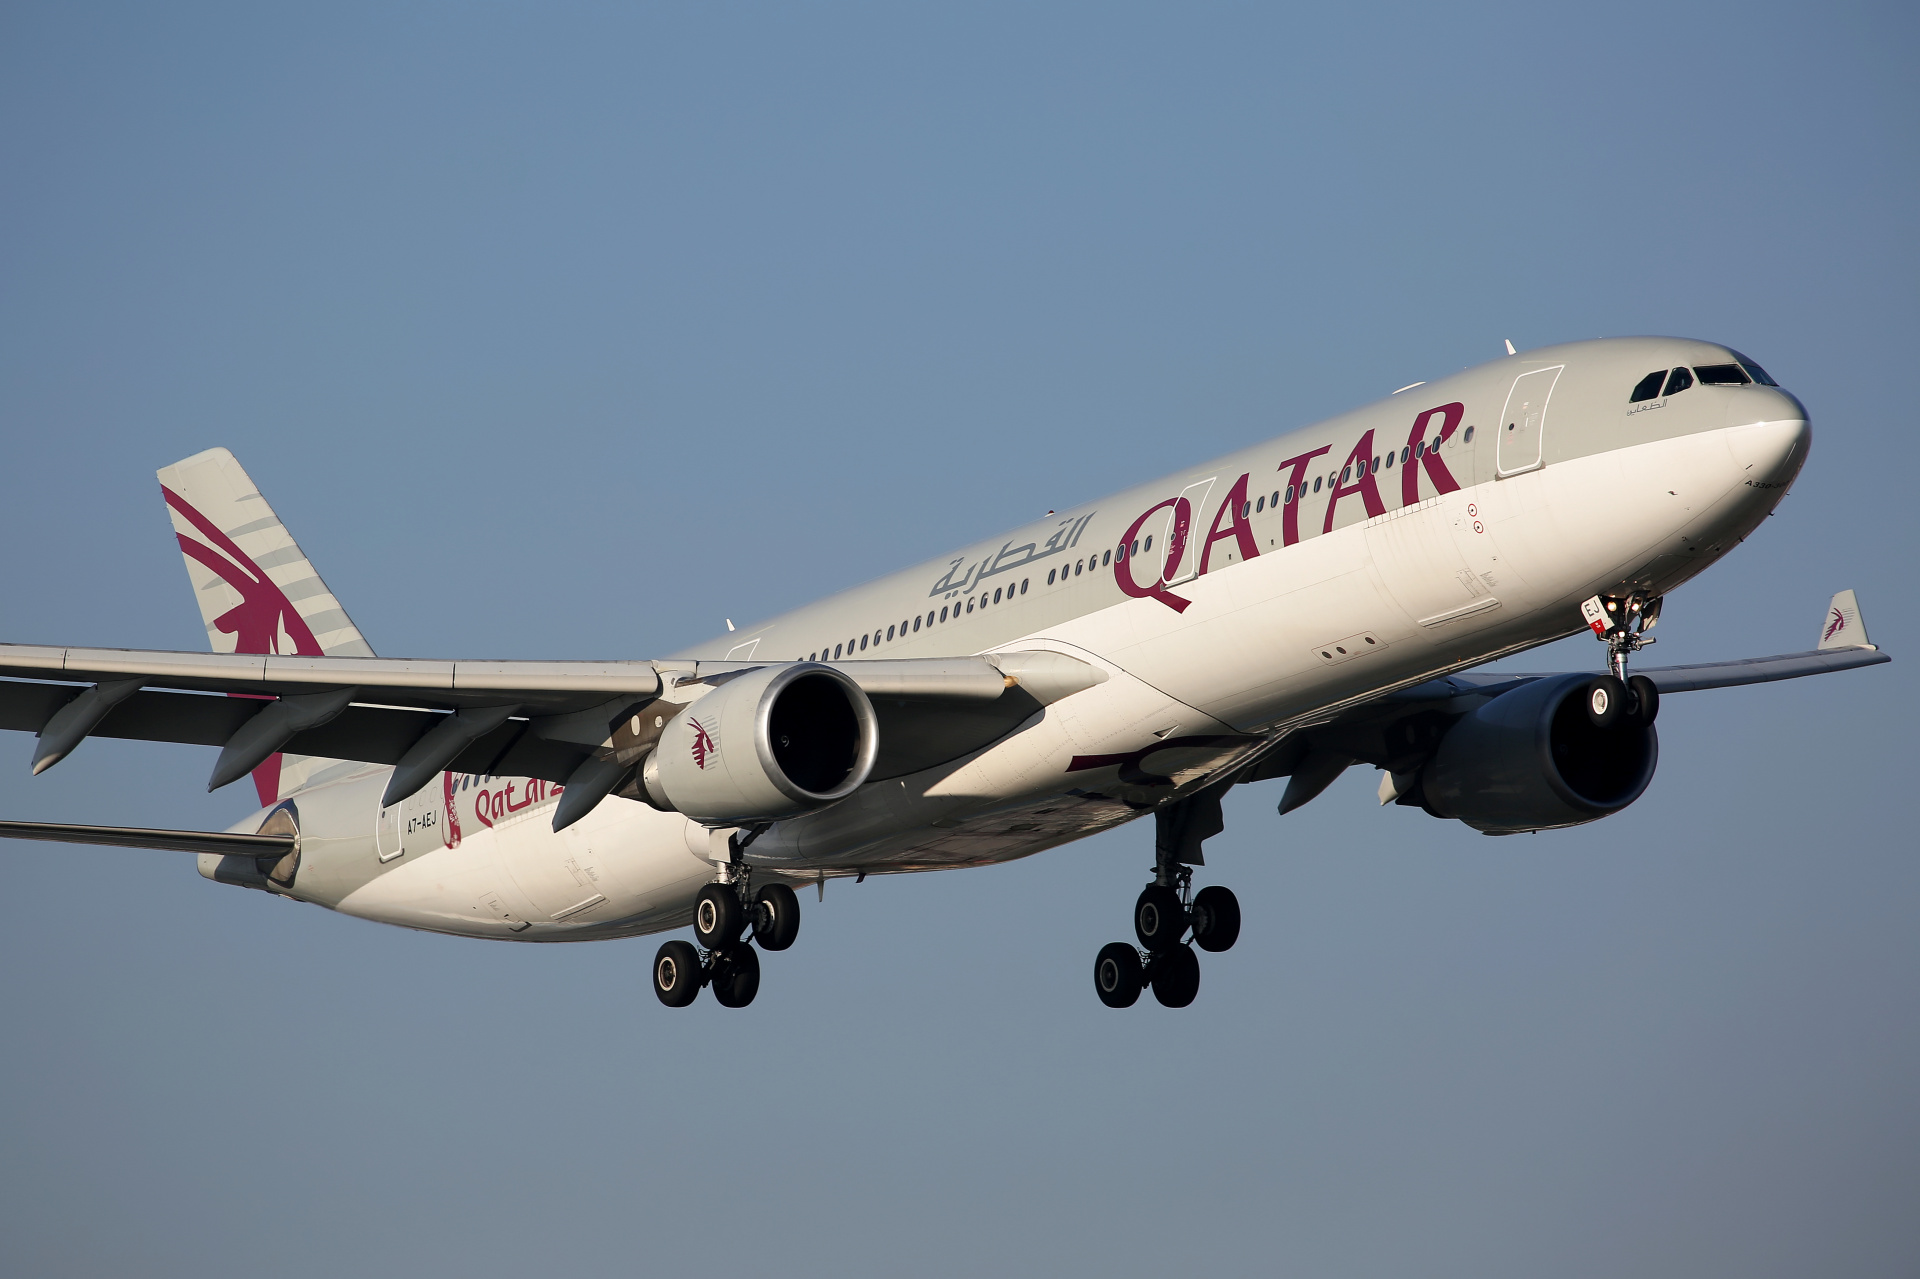 A7-AEJ (FIFA World Cup Qatar 2022 livery) (Aircraft » EPWA Spotting » Airbus A330-300 » Qatar Airways)